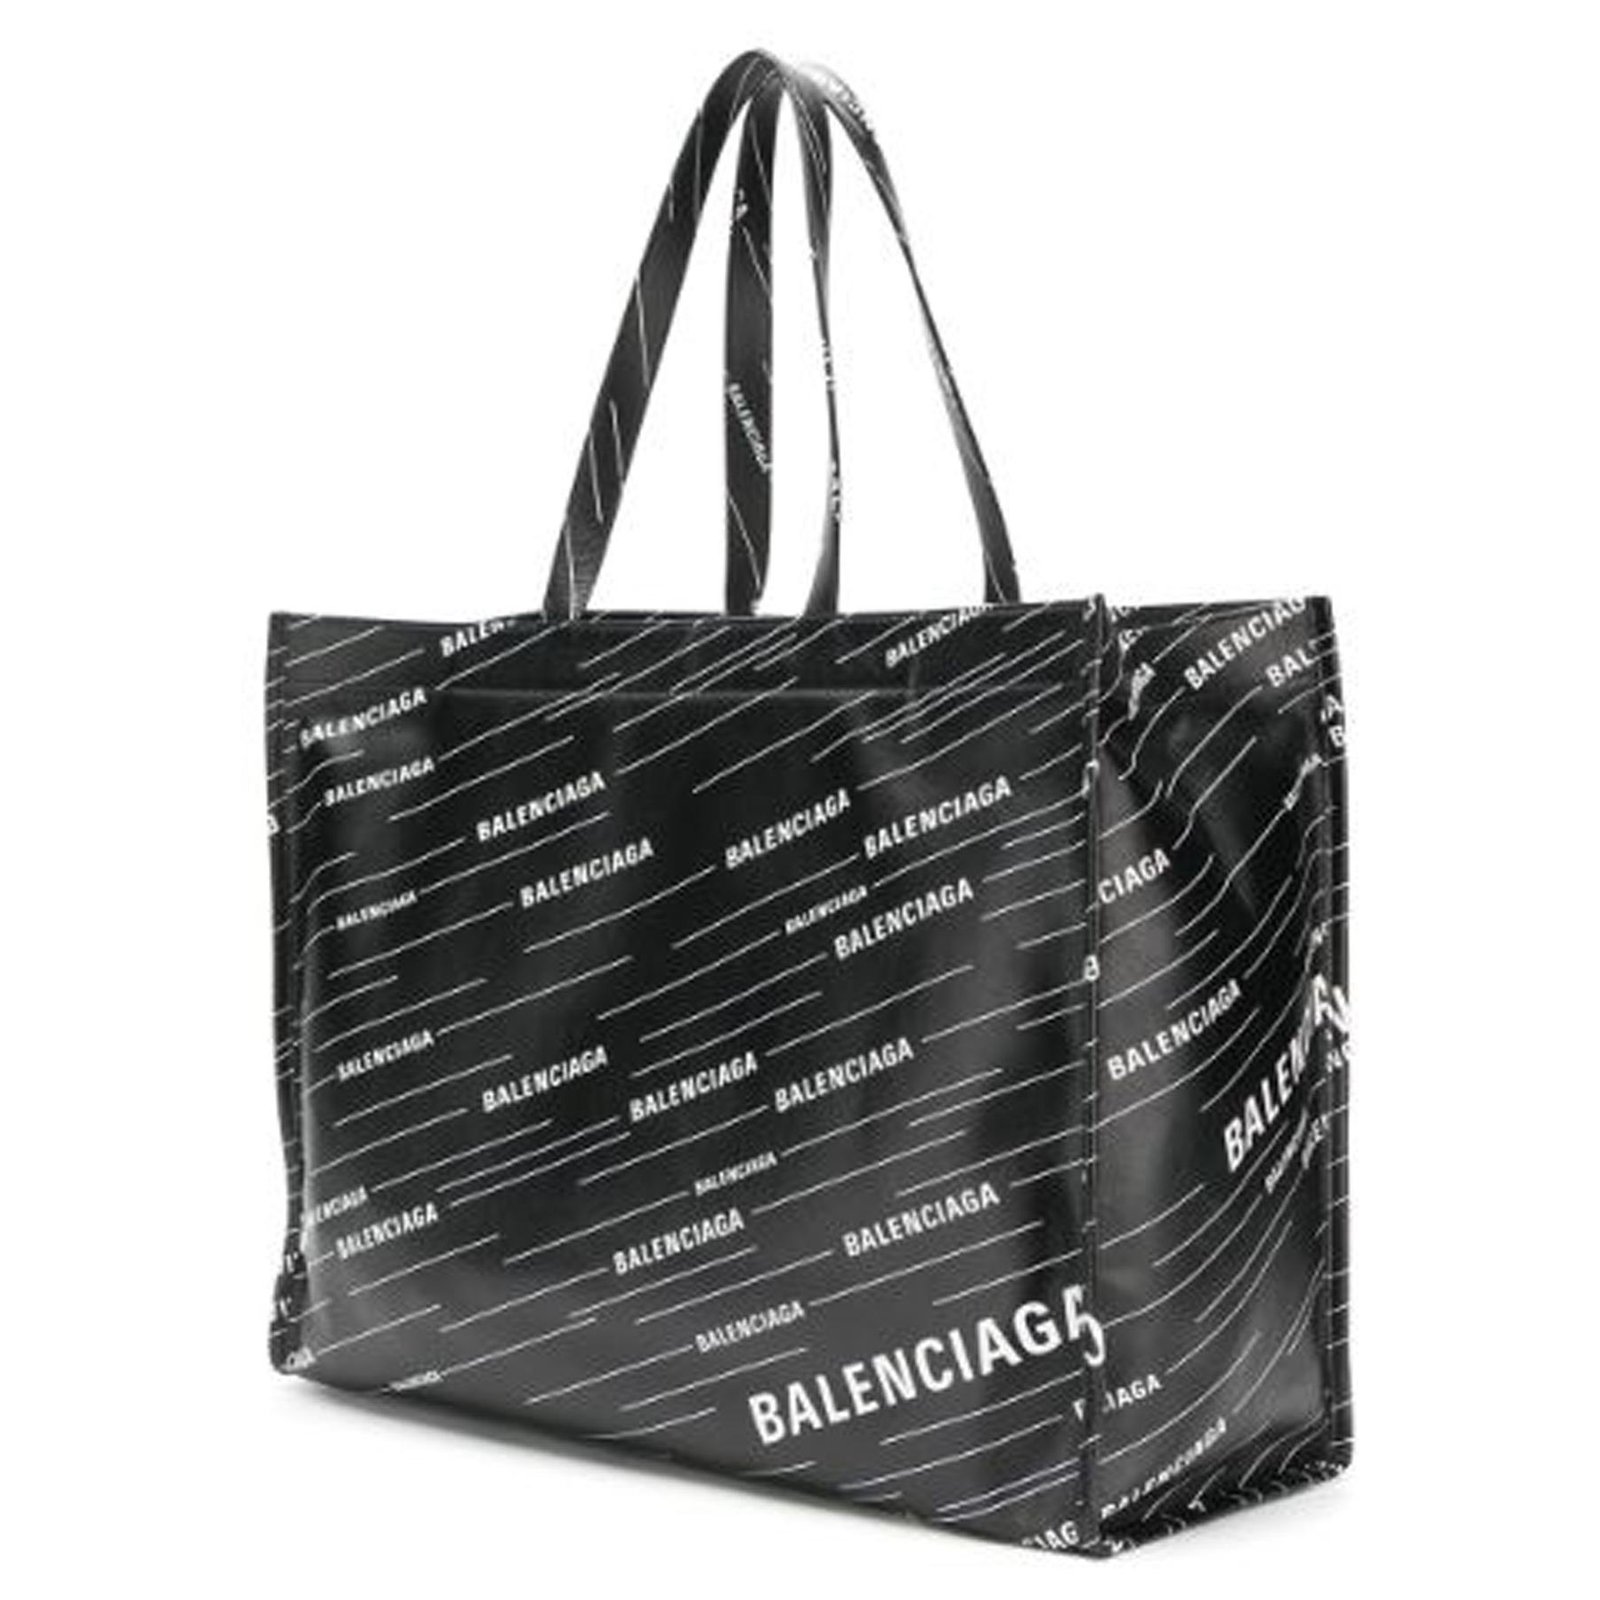 Balenciaga Black Logomania Leather Tote Bag White Pony-style calfskin ...